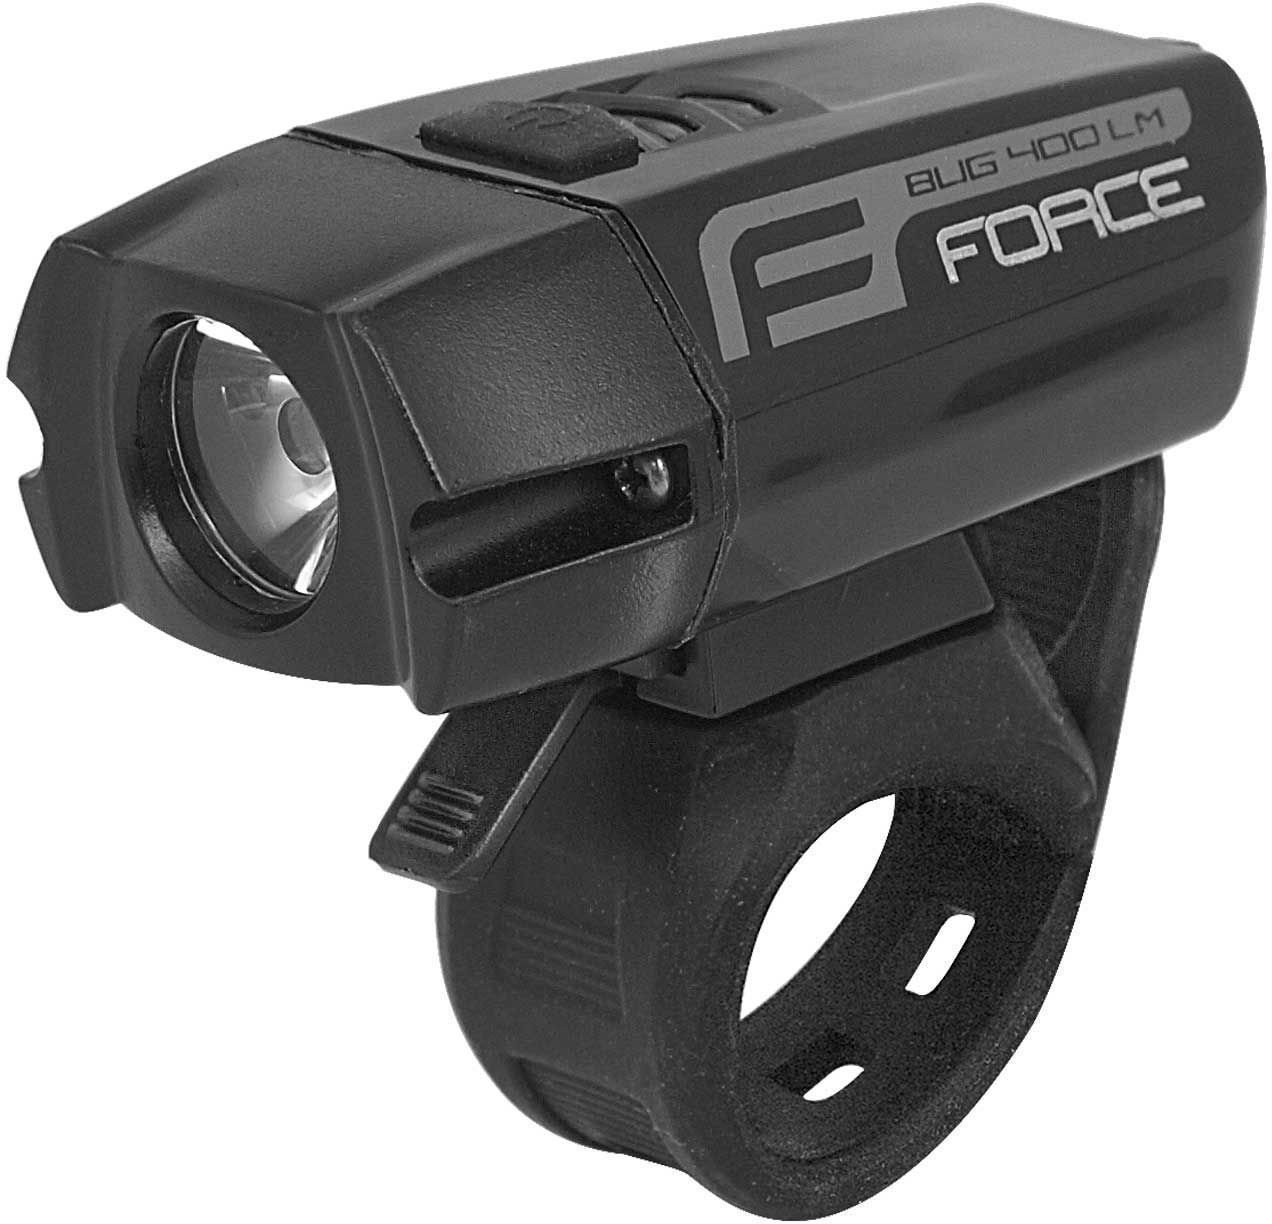 Cycling light Force Bug-400 USB 400 lm Black Cycling light